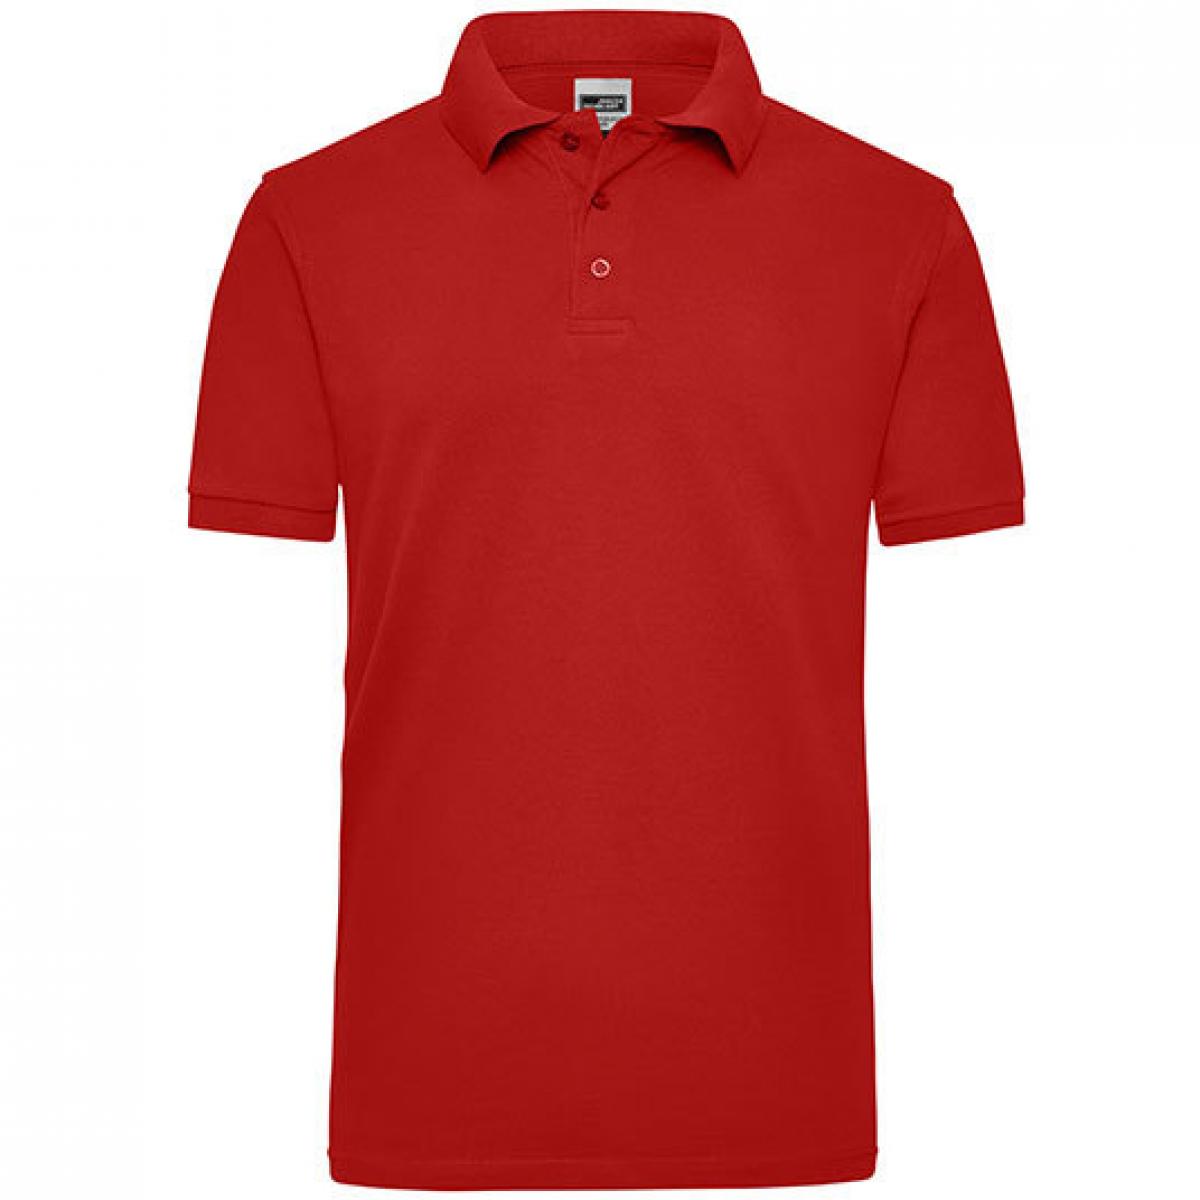 Hersteller: James+Nicholson Herstellernummer: JN 801 Artikelbezeichnung: Workwear Herren Poloshirt Men Farbe: Red